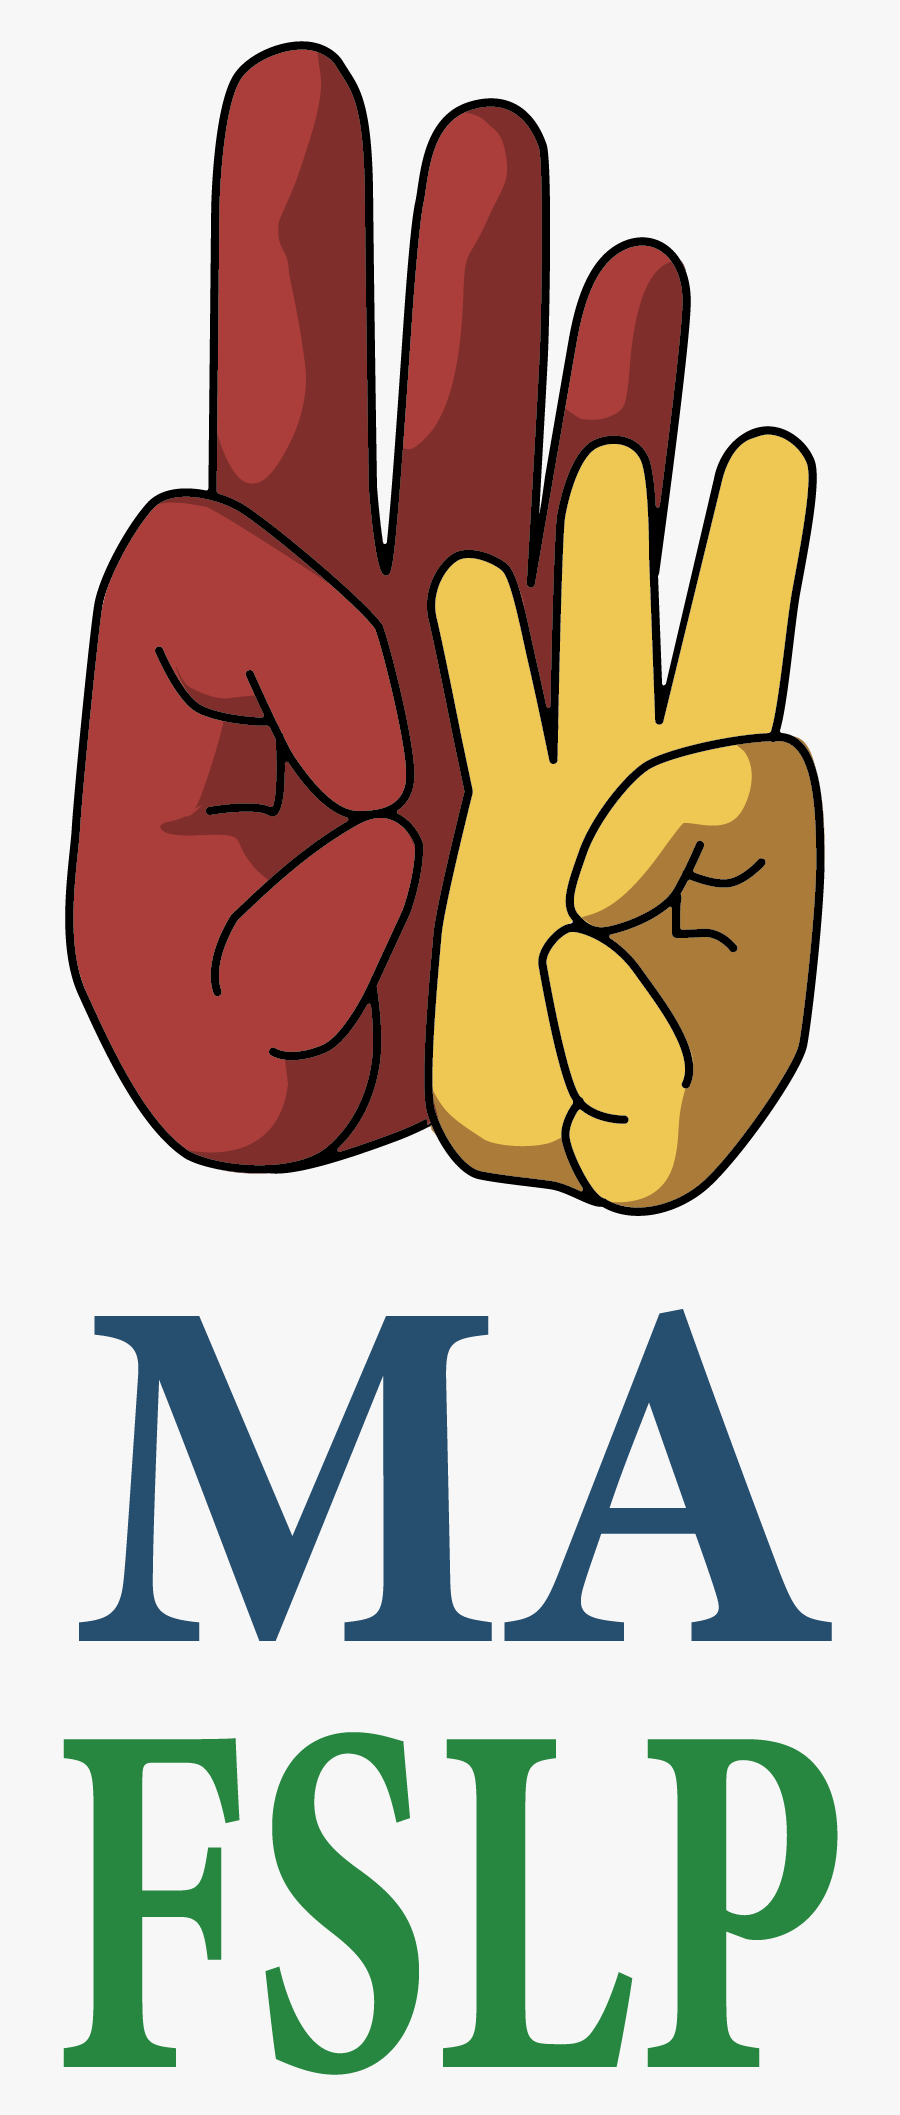 Mass Fslp Logo - Joe Machens, Transparent Clipart